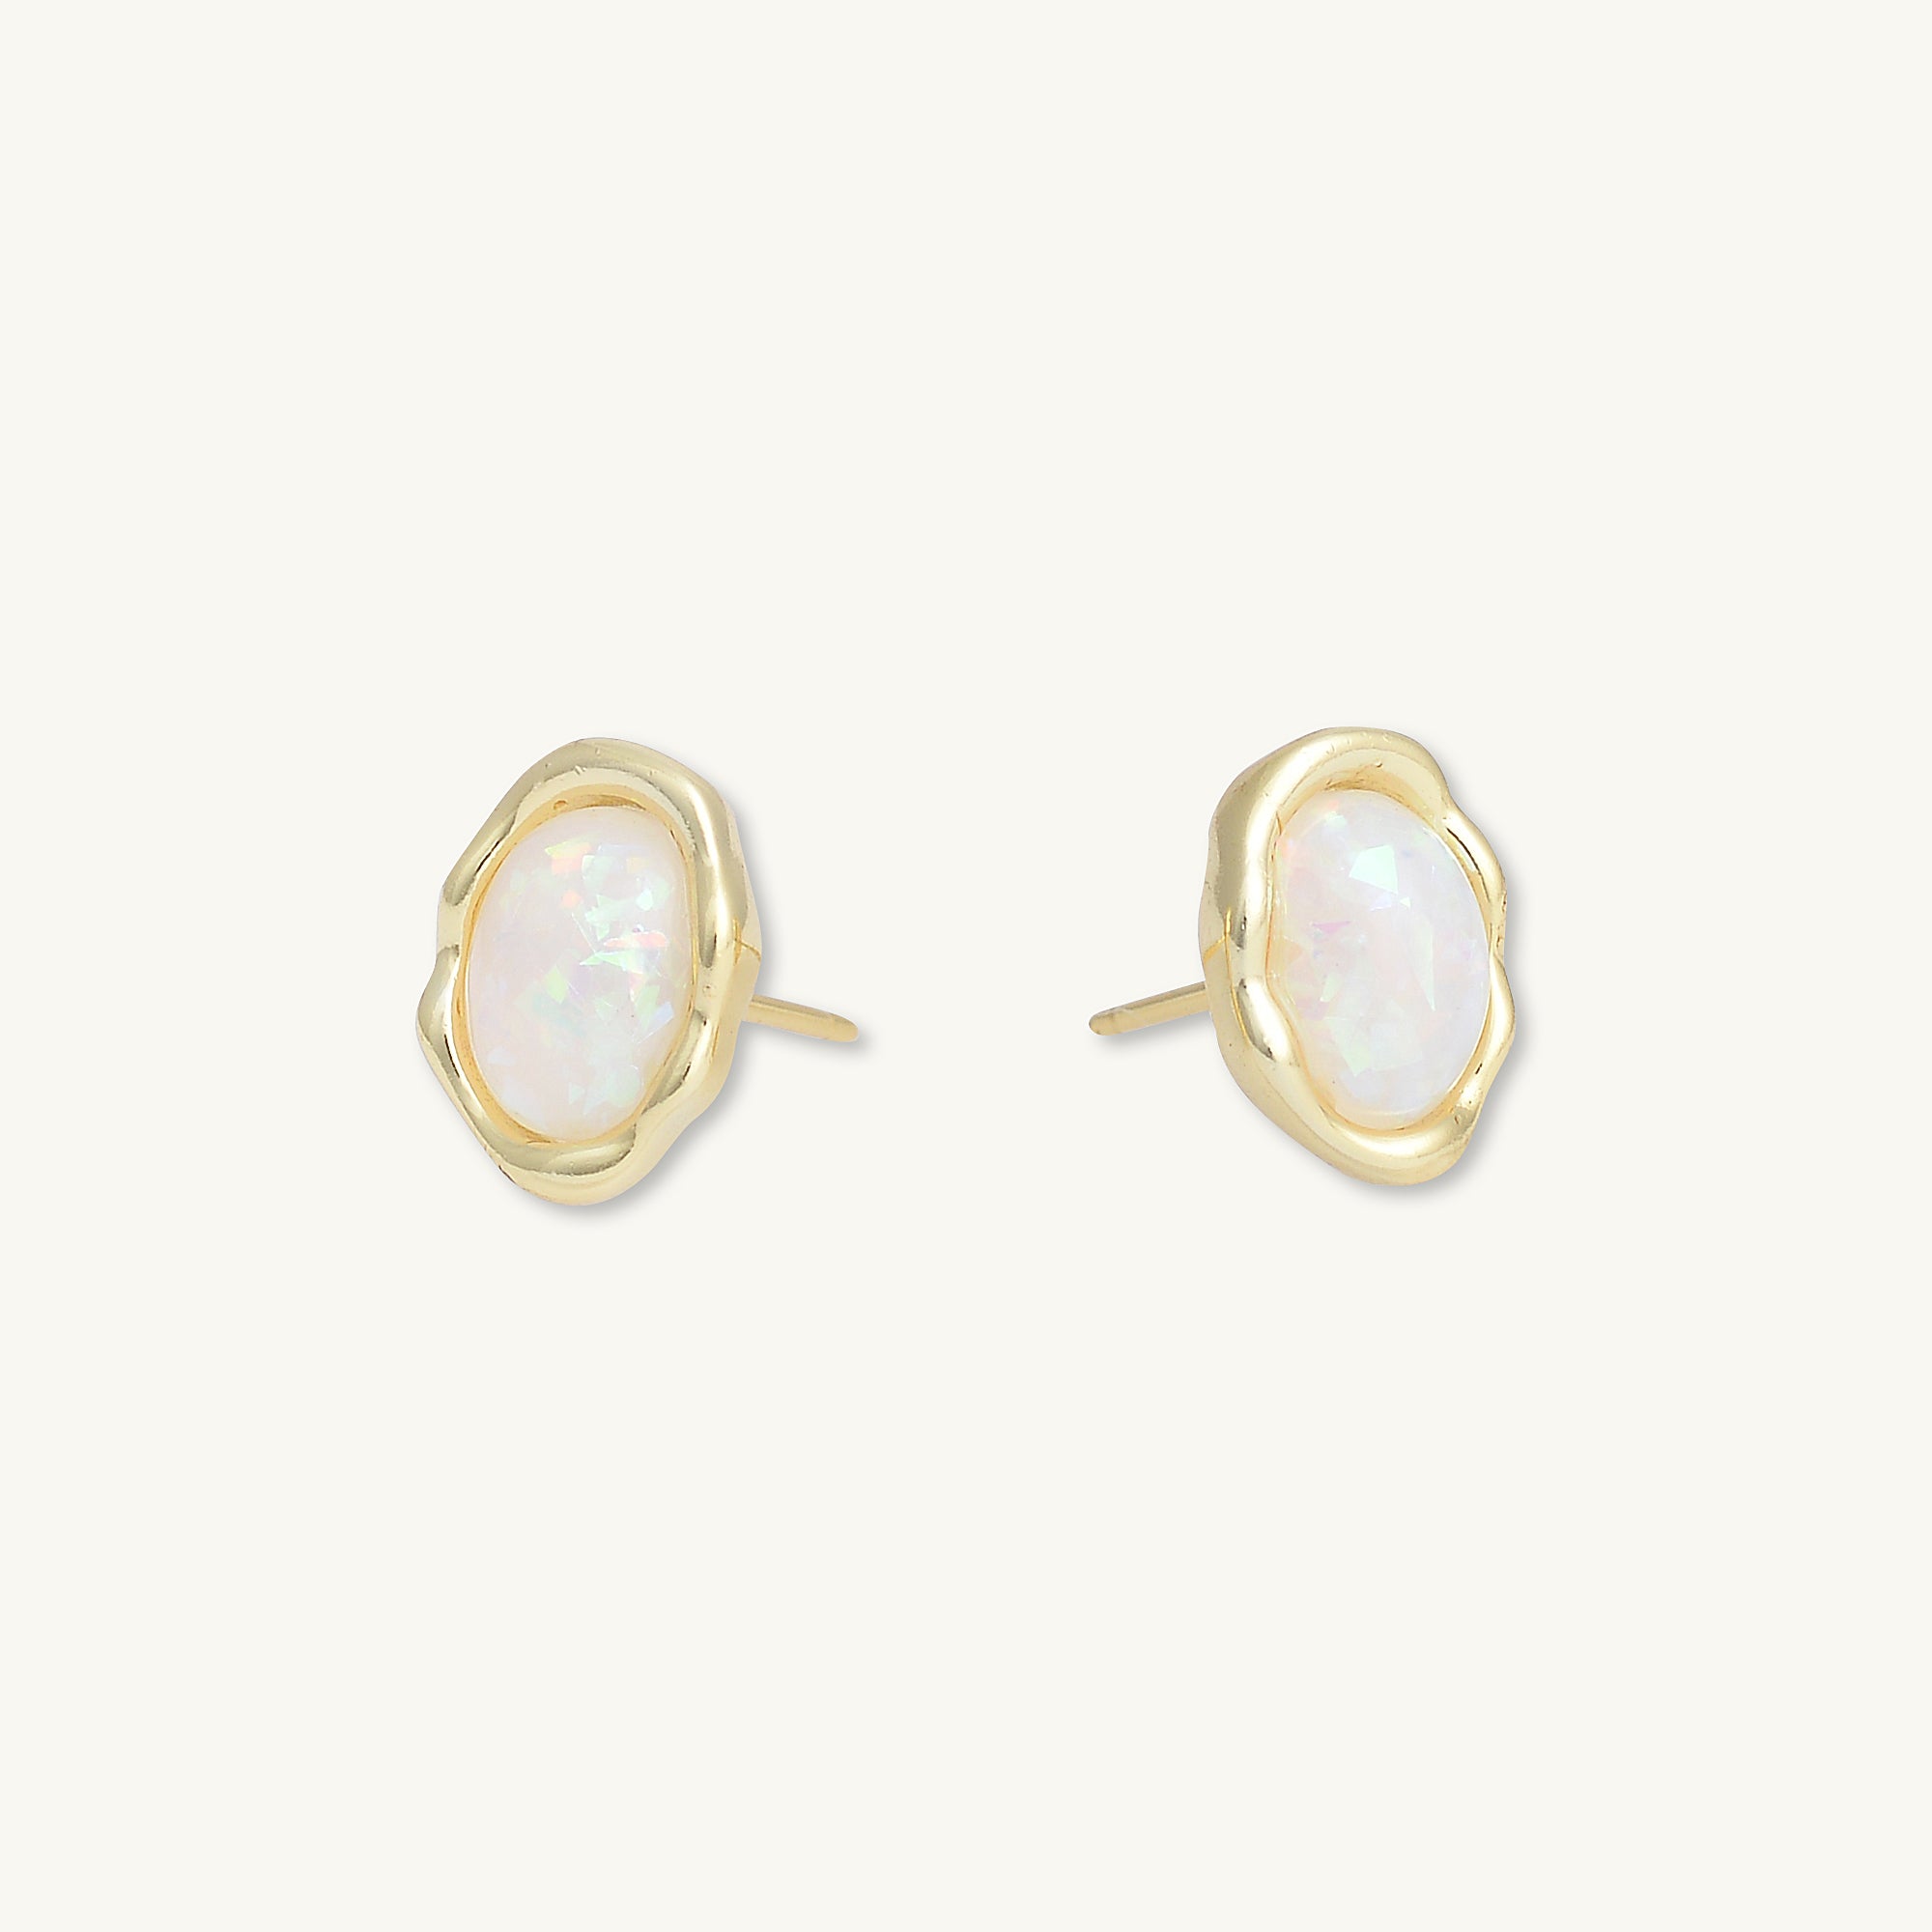 Vintage Oval Opal Stud Earrings